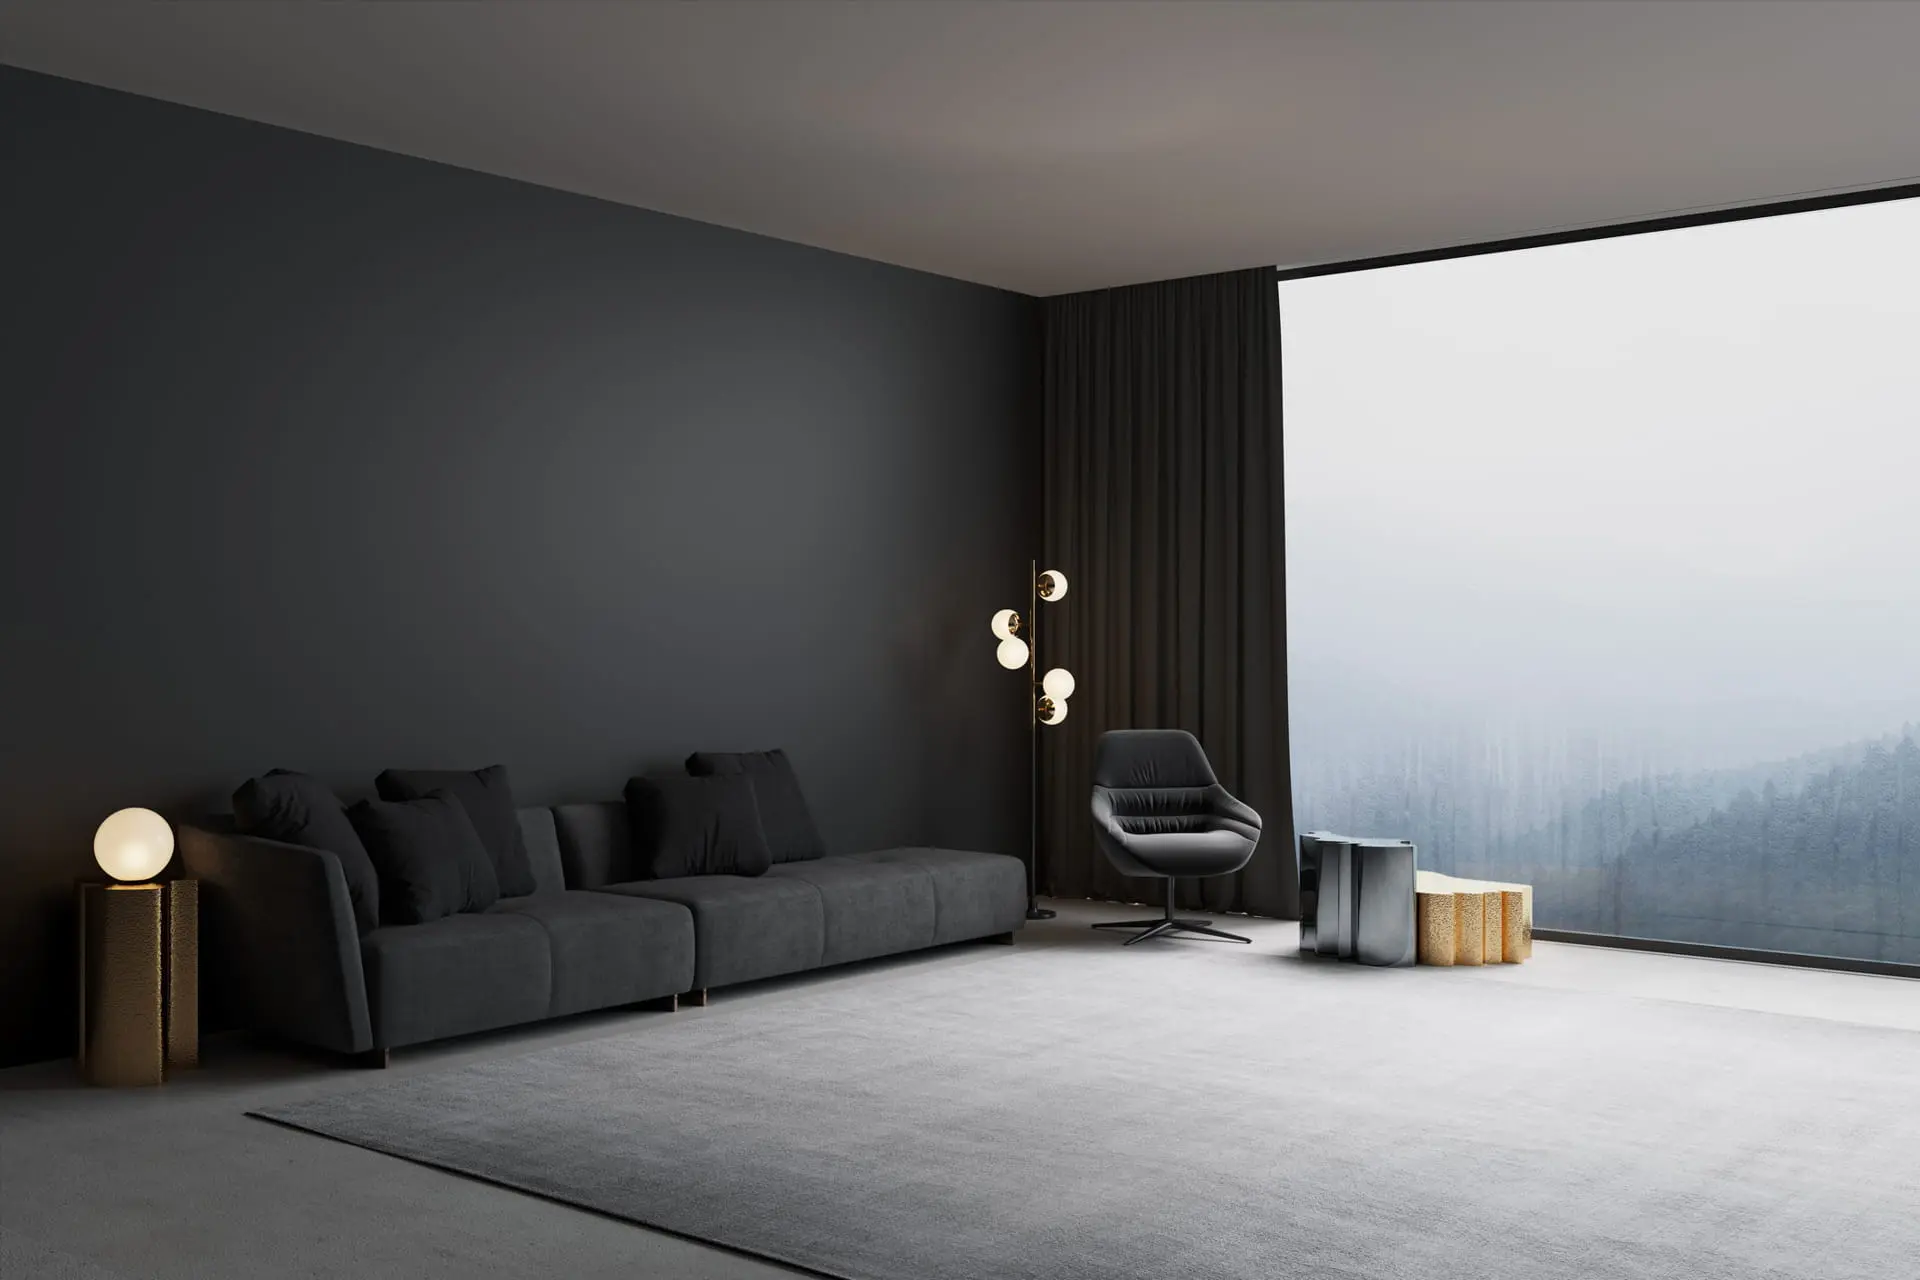 Σύγχρονο σαλόνι διακοσμημένο με μικροτσιμέντο σε σκούρο χρώμα